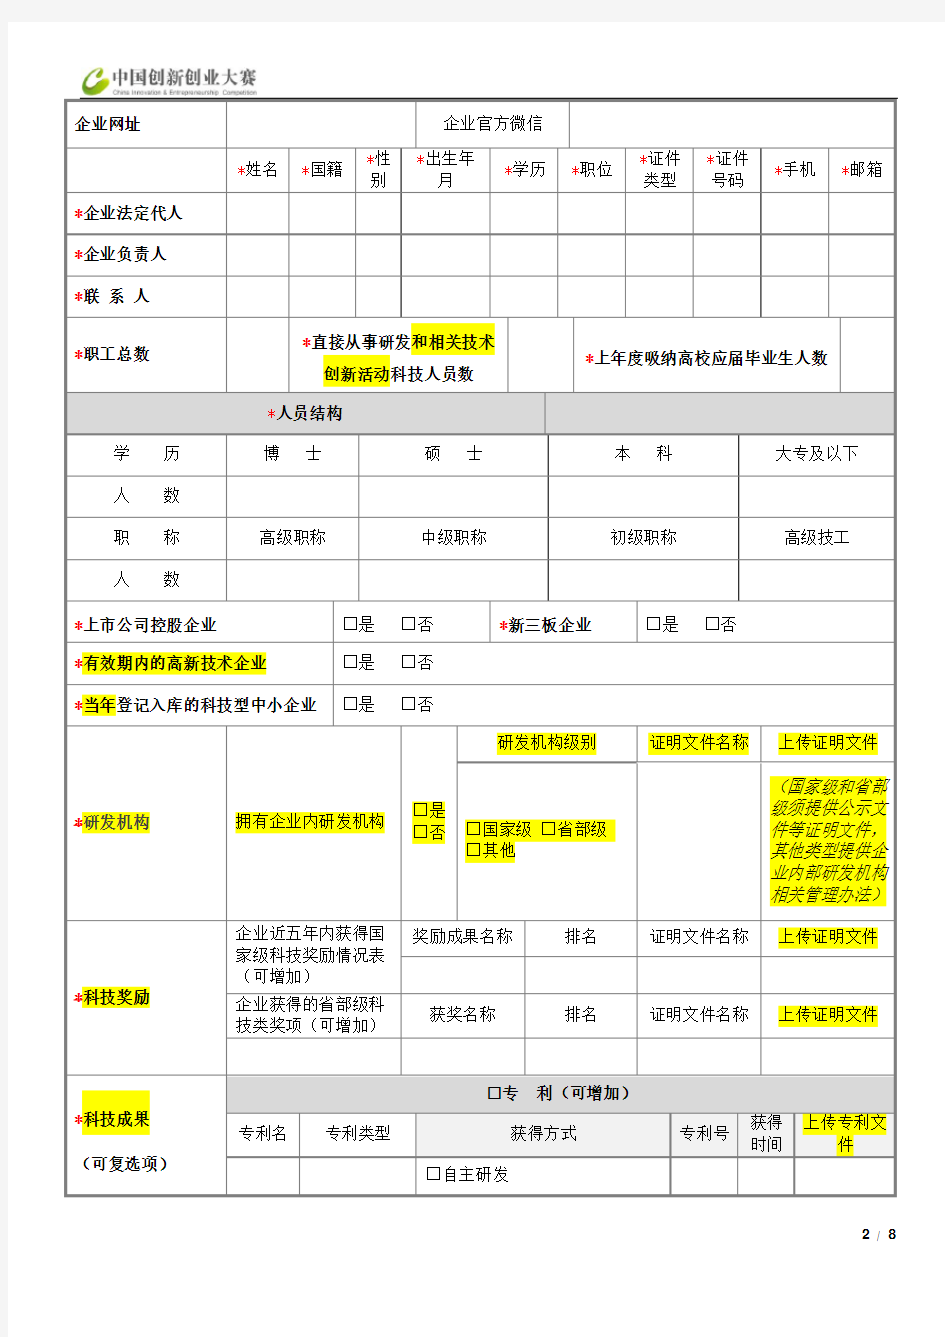 中国创新创业大赛初创组资料填写表